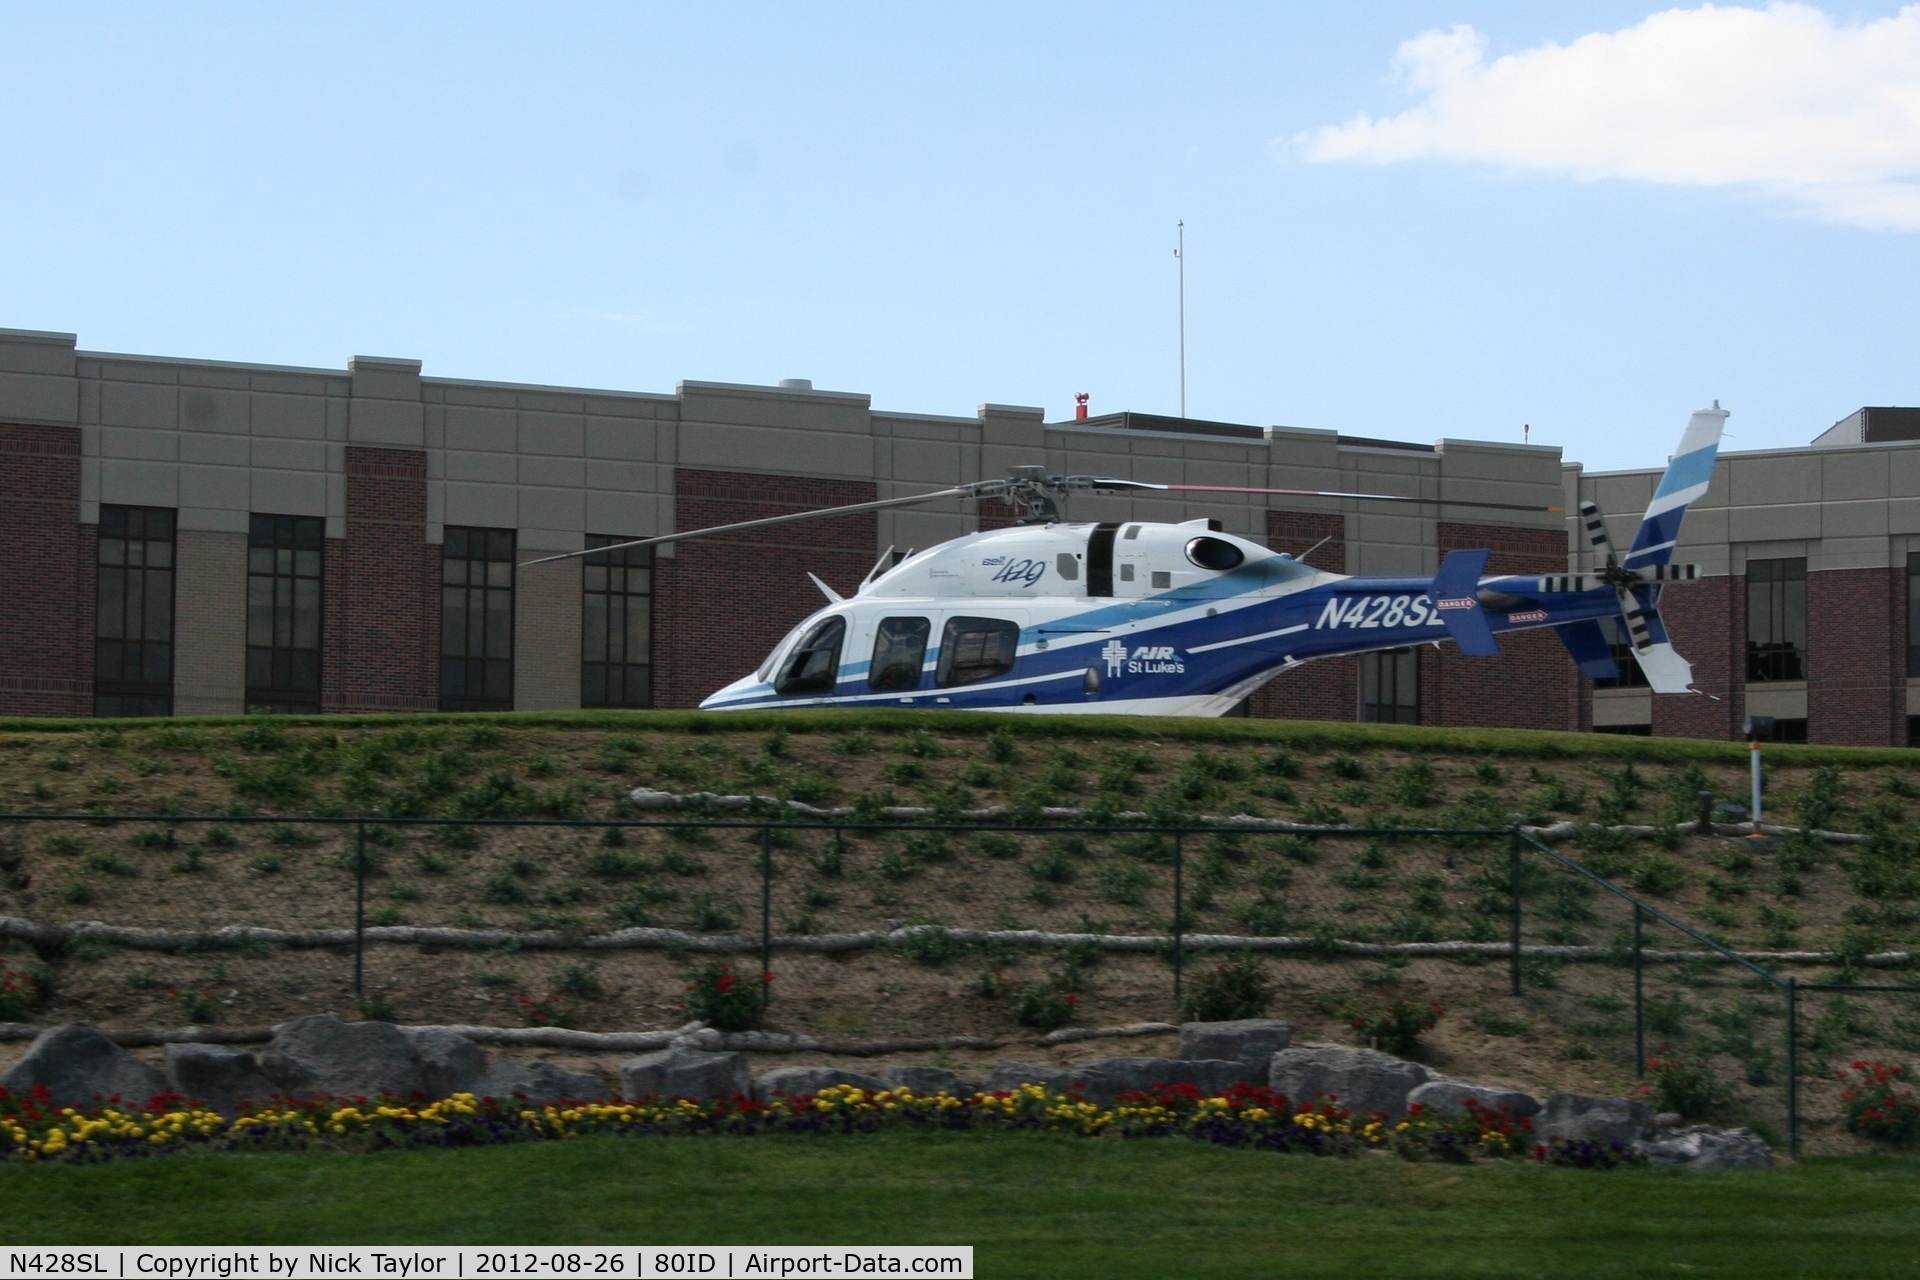 N428SL, 2010 Bell 429 GlobalRanger C/N 57014, Parked at St. Lukes Hospital